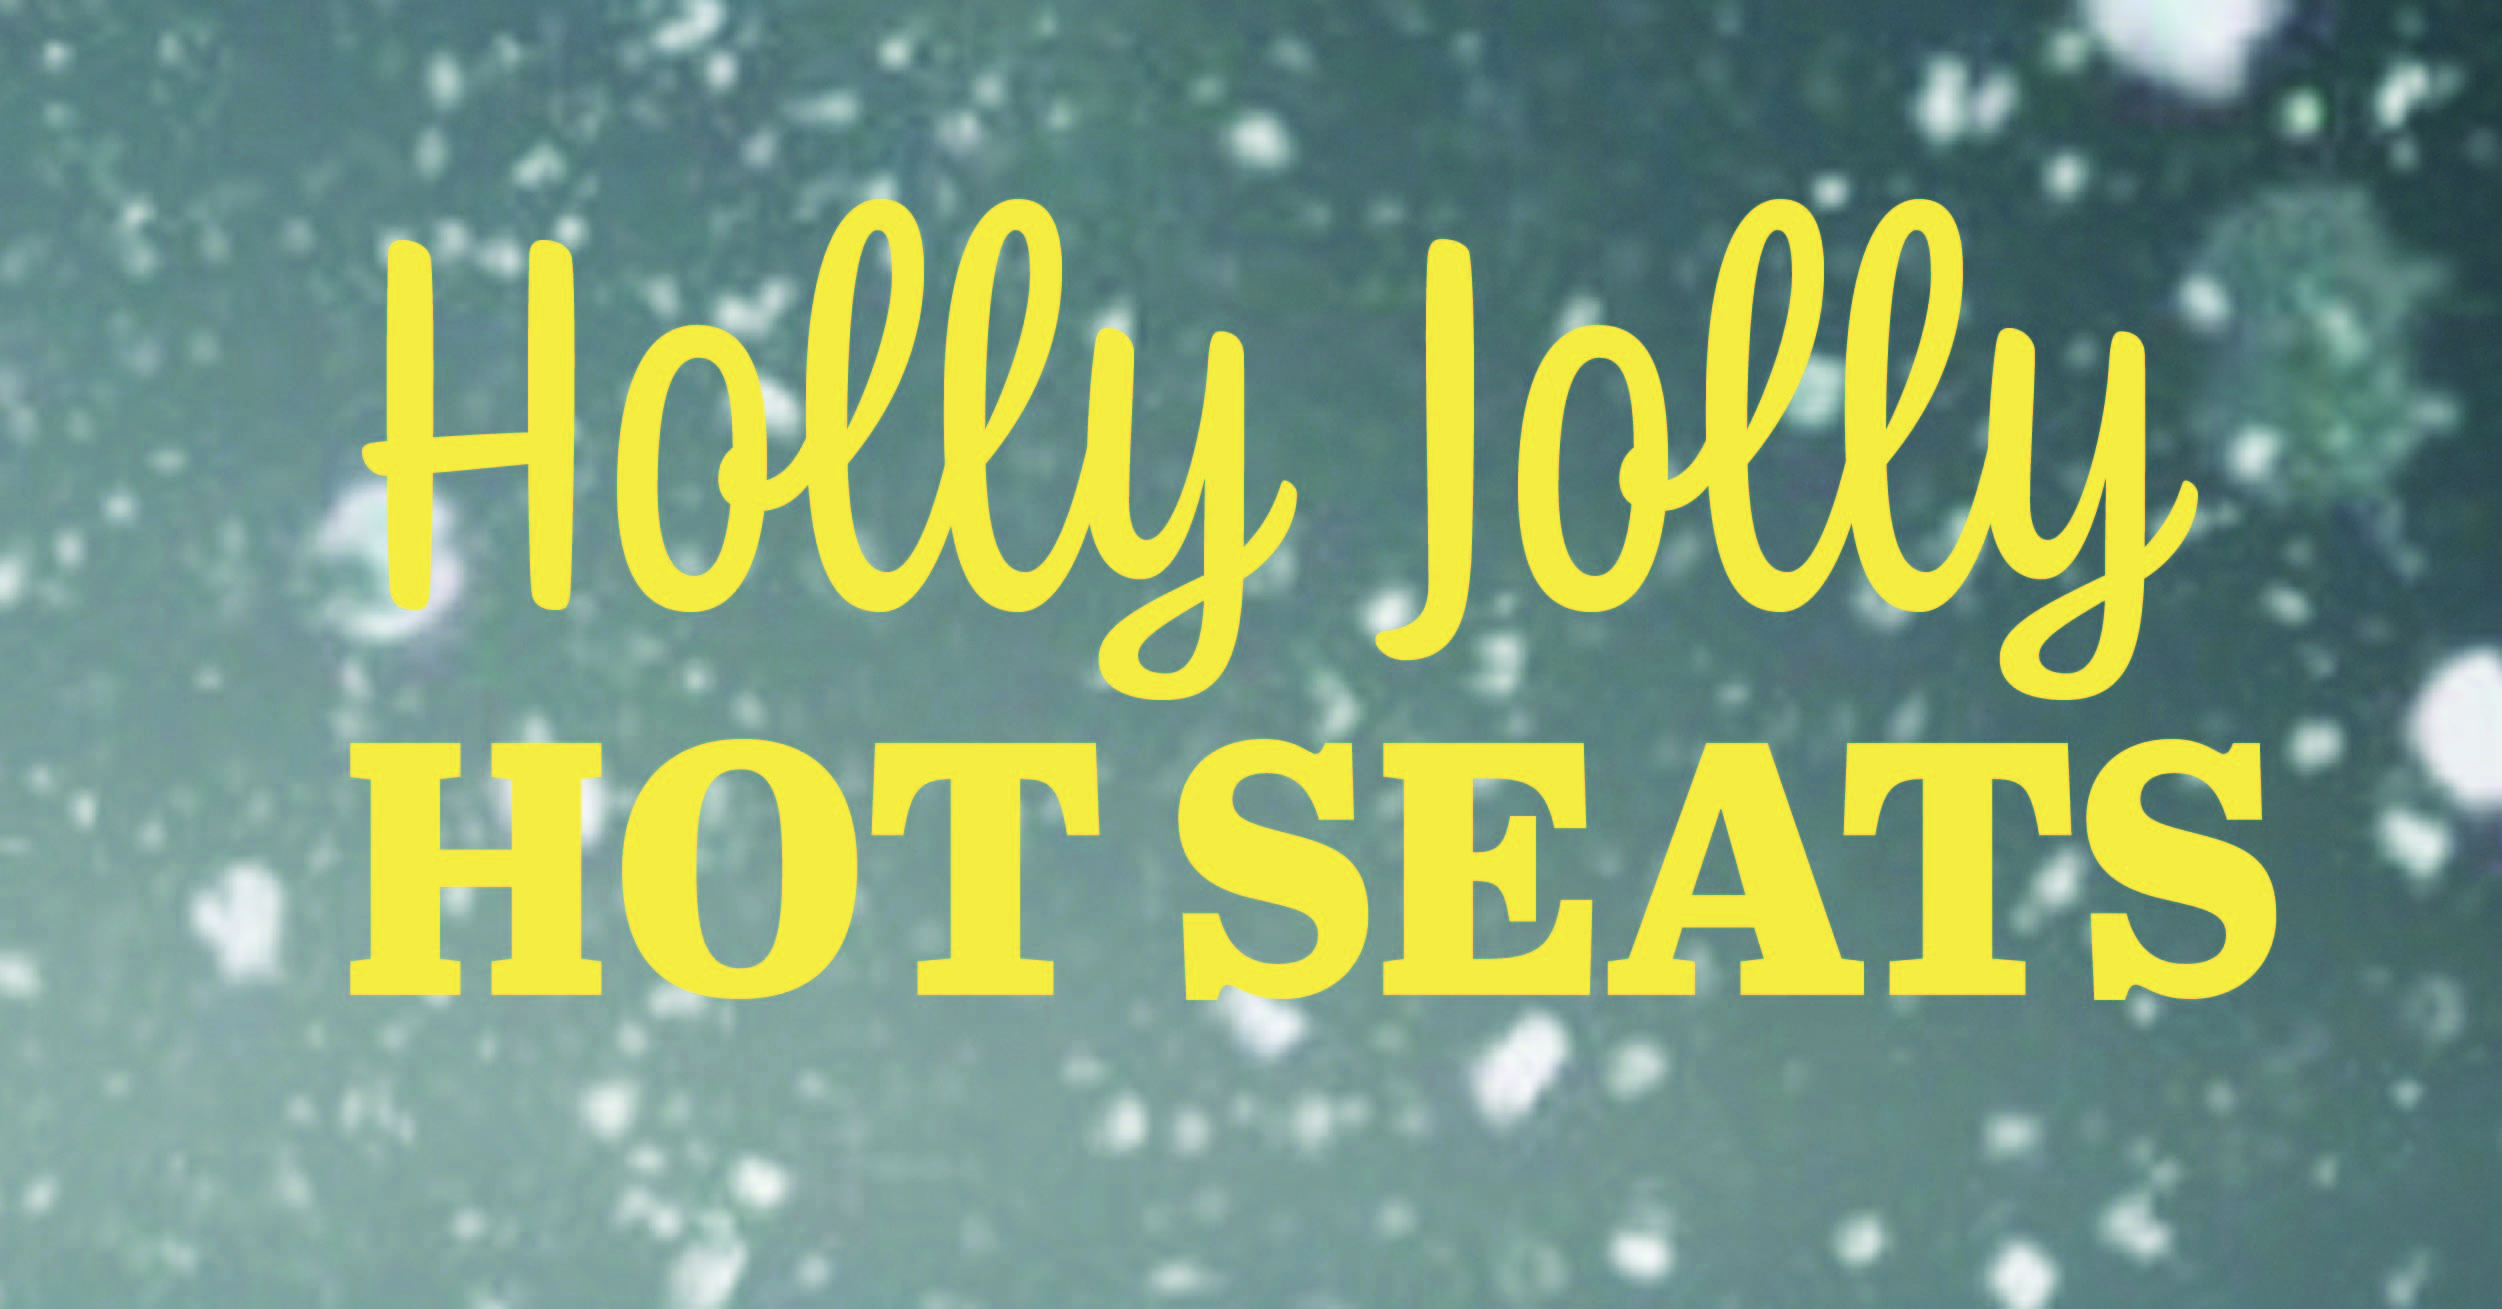 HOLLY JOLLY HOT SEATS